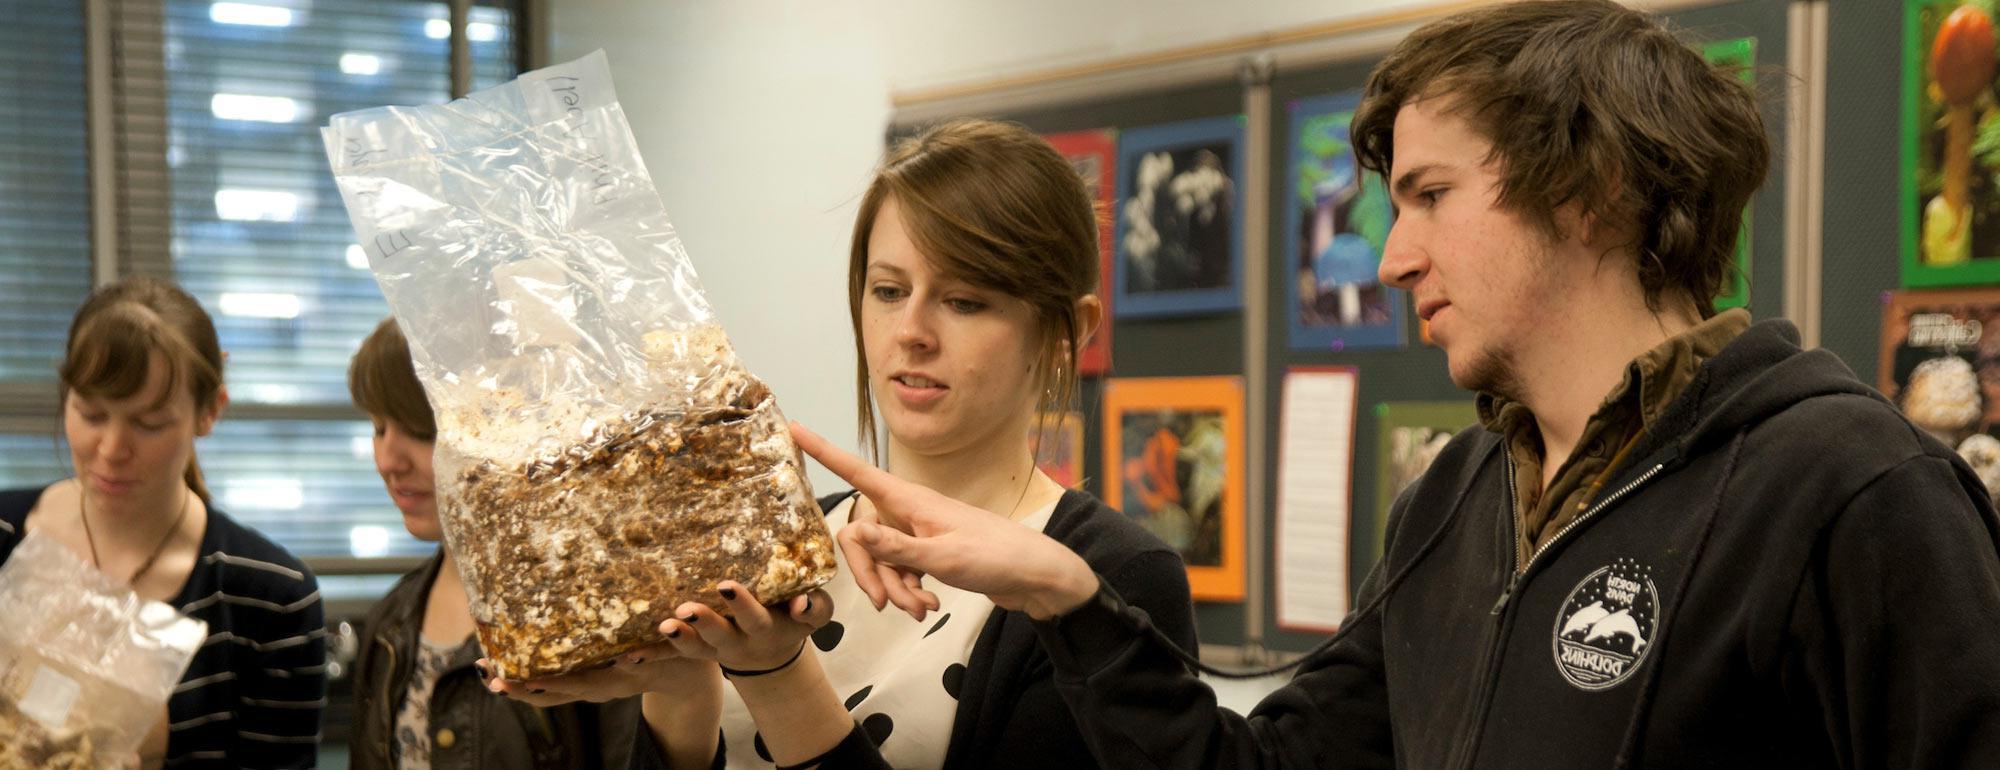 两个学生正在检查一个香菇开胃包